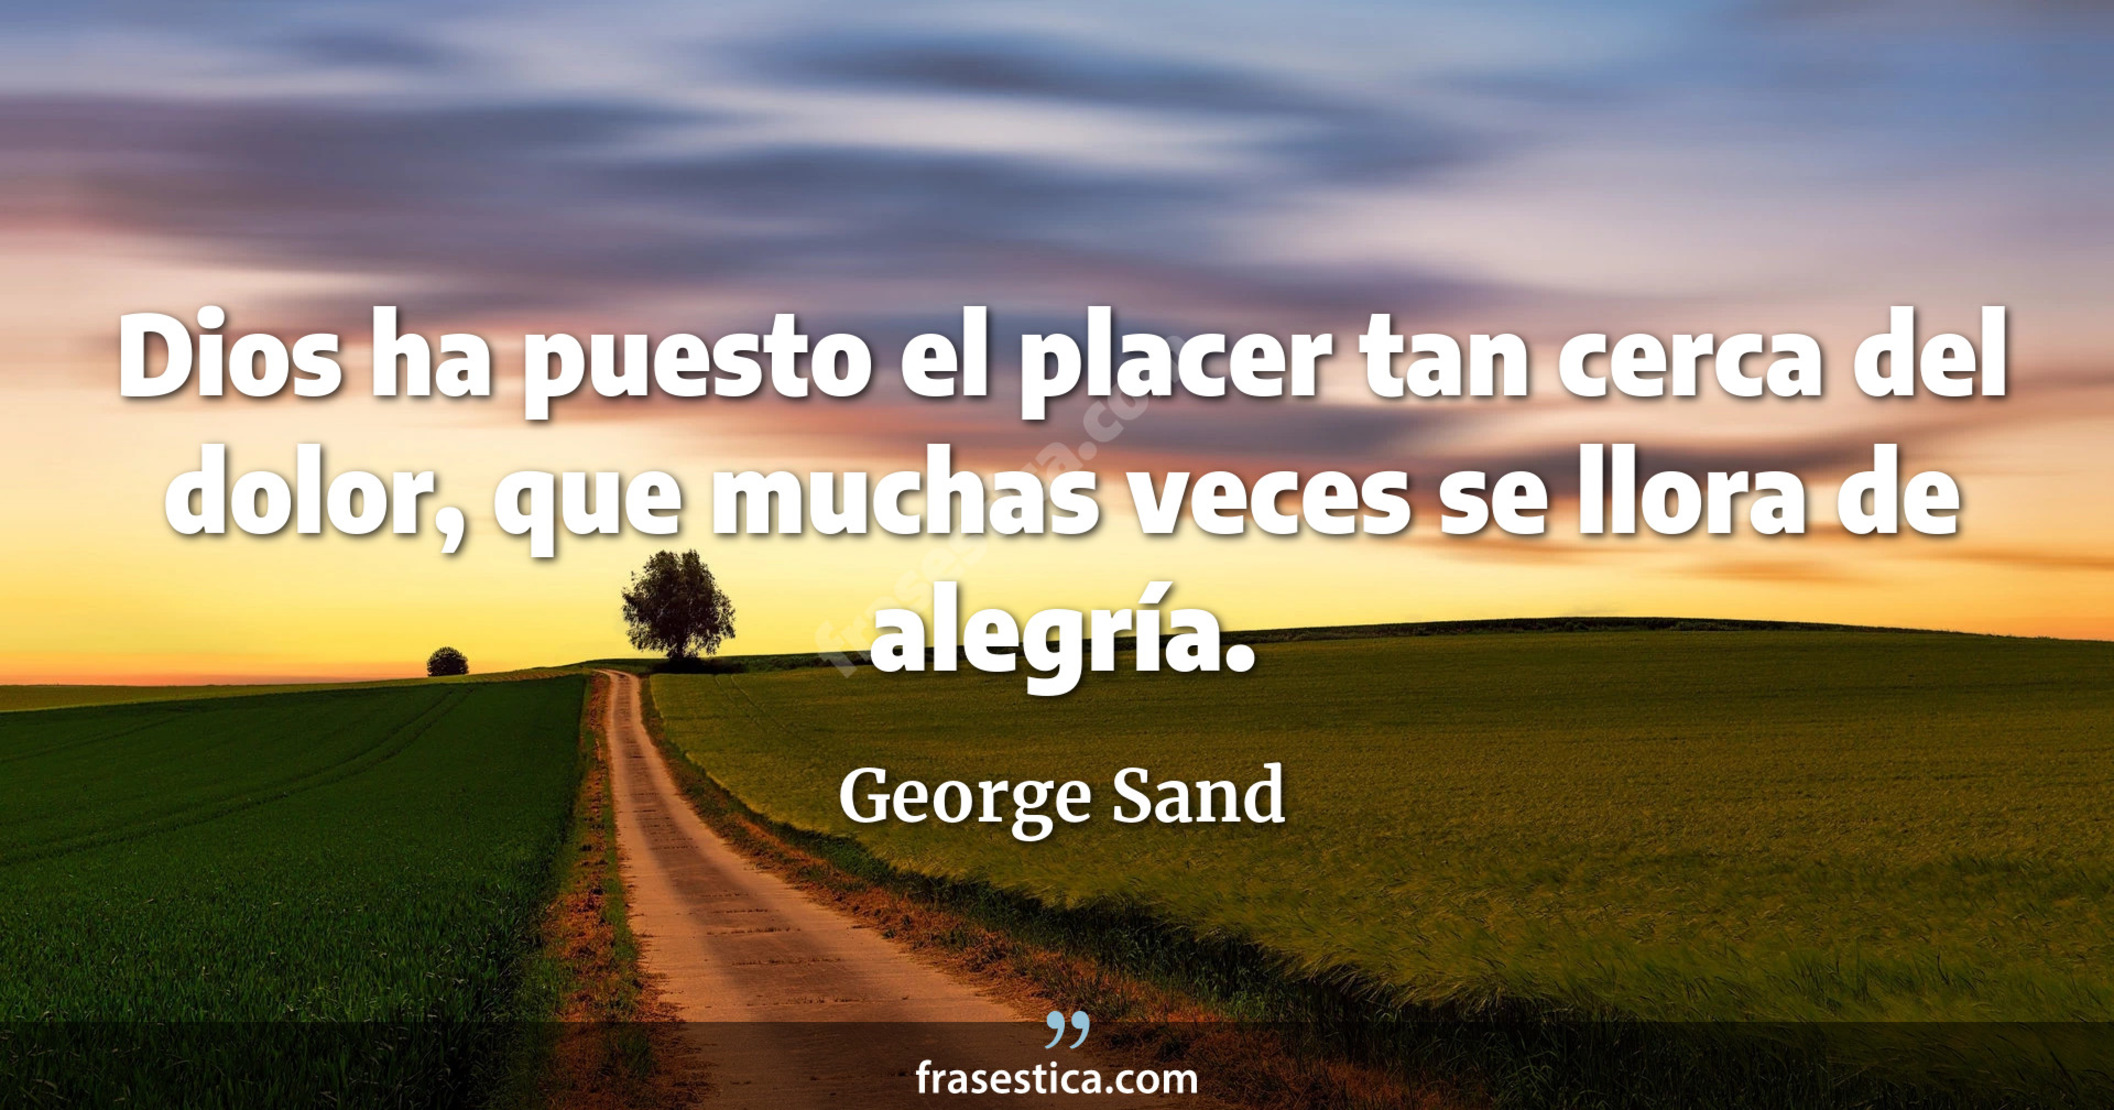 Dios ha puesto el placer tan cerca del dolor, que muchas veces se llora de alegría. - George Sand